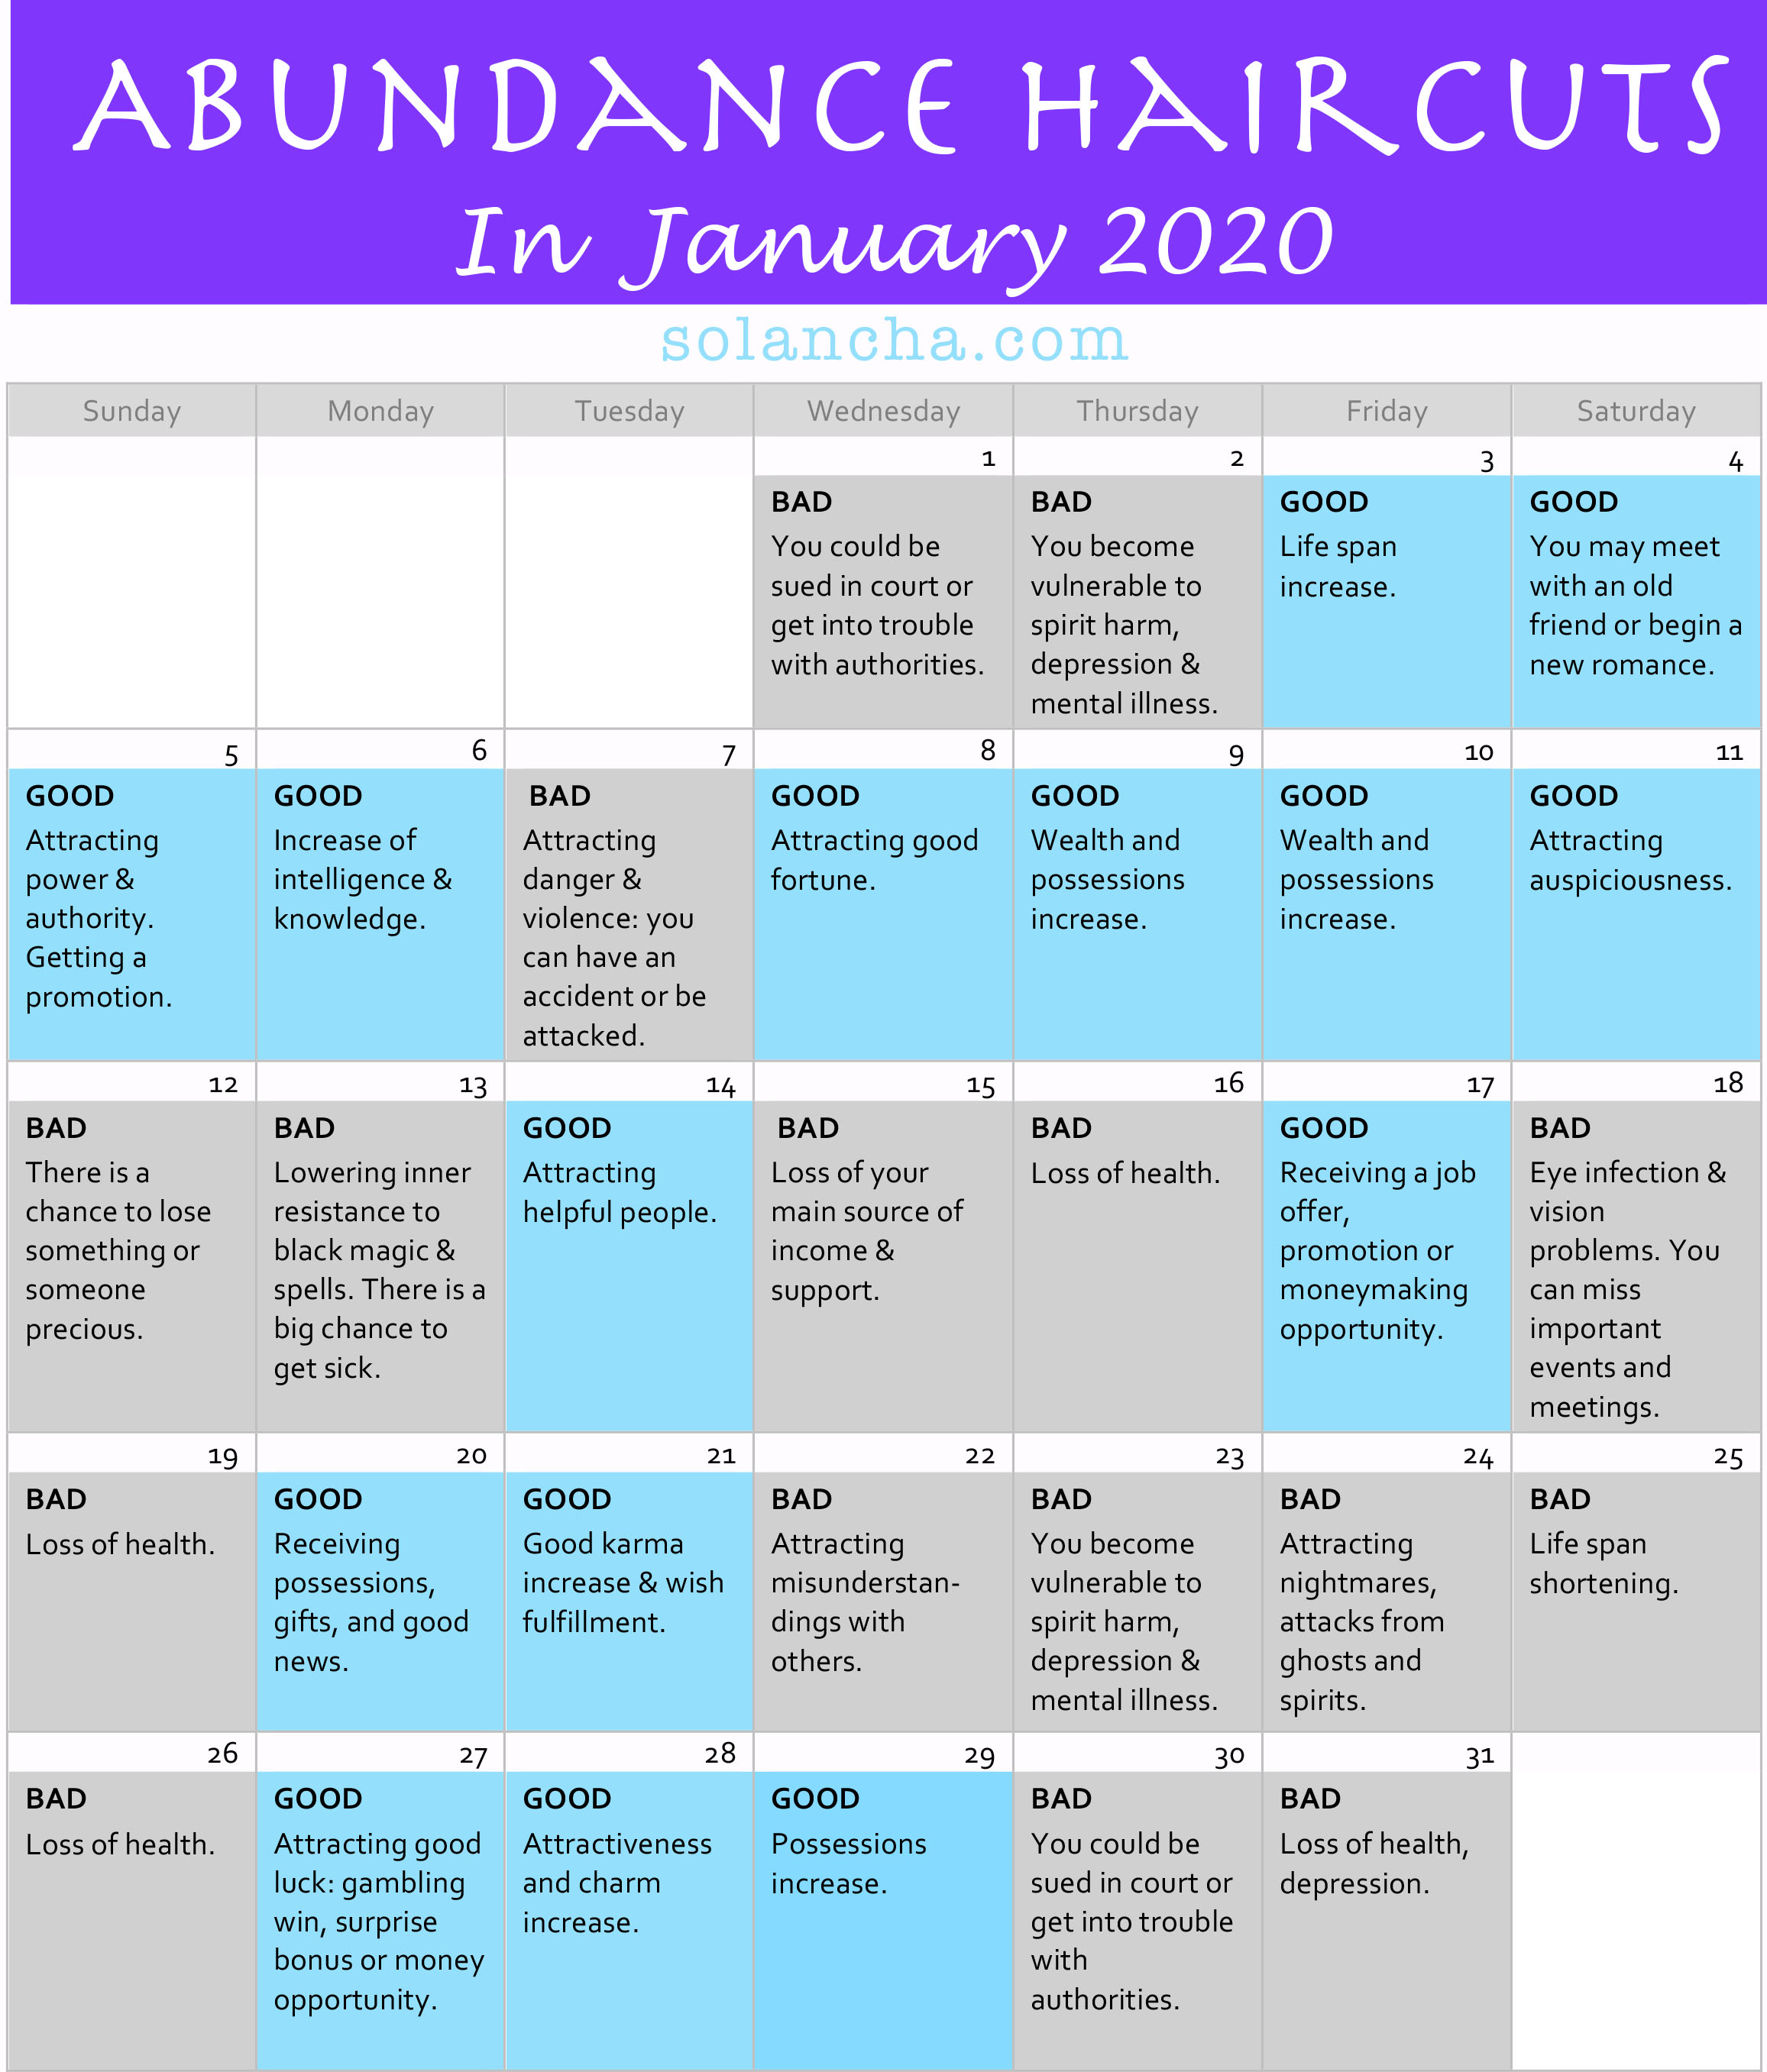 Abundance Haircuts in January 2020 Calendar